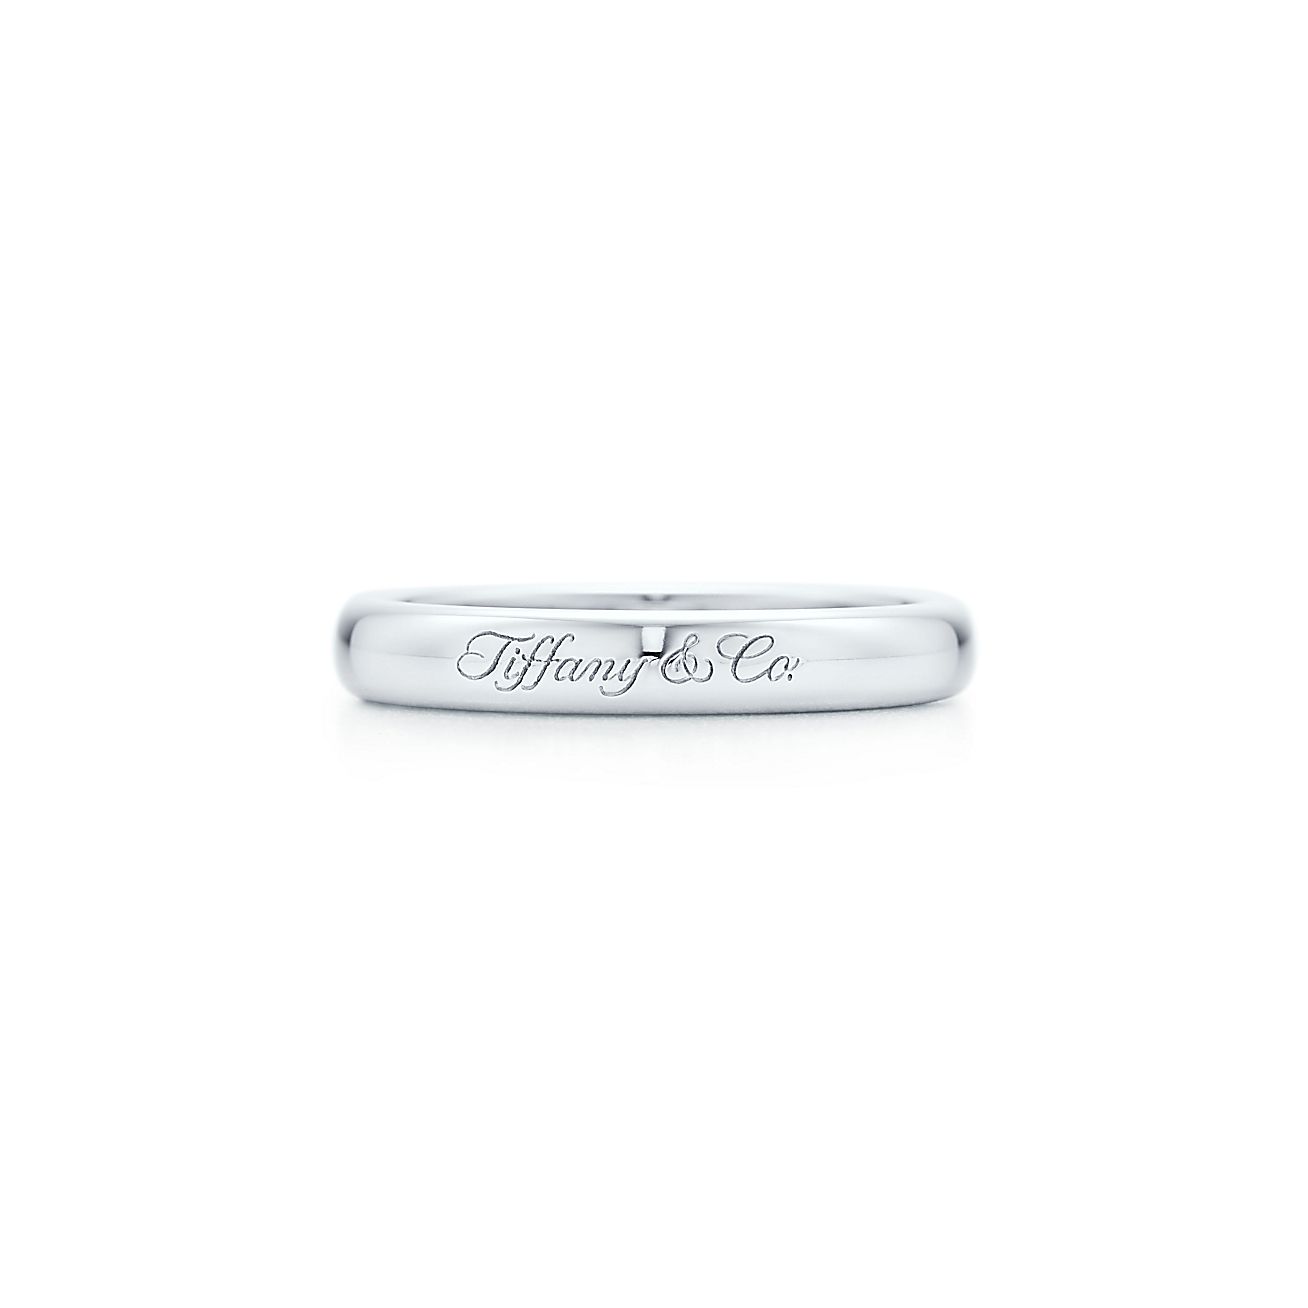 値段 ティファニー 結婚 指輪